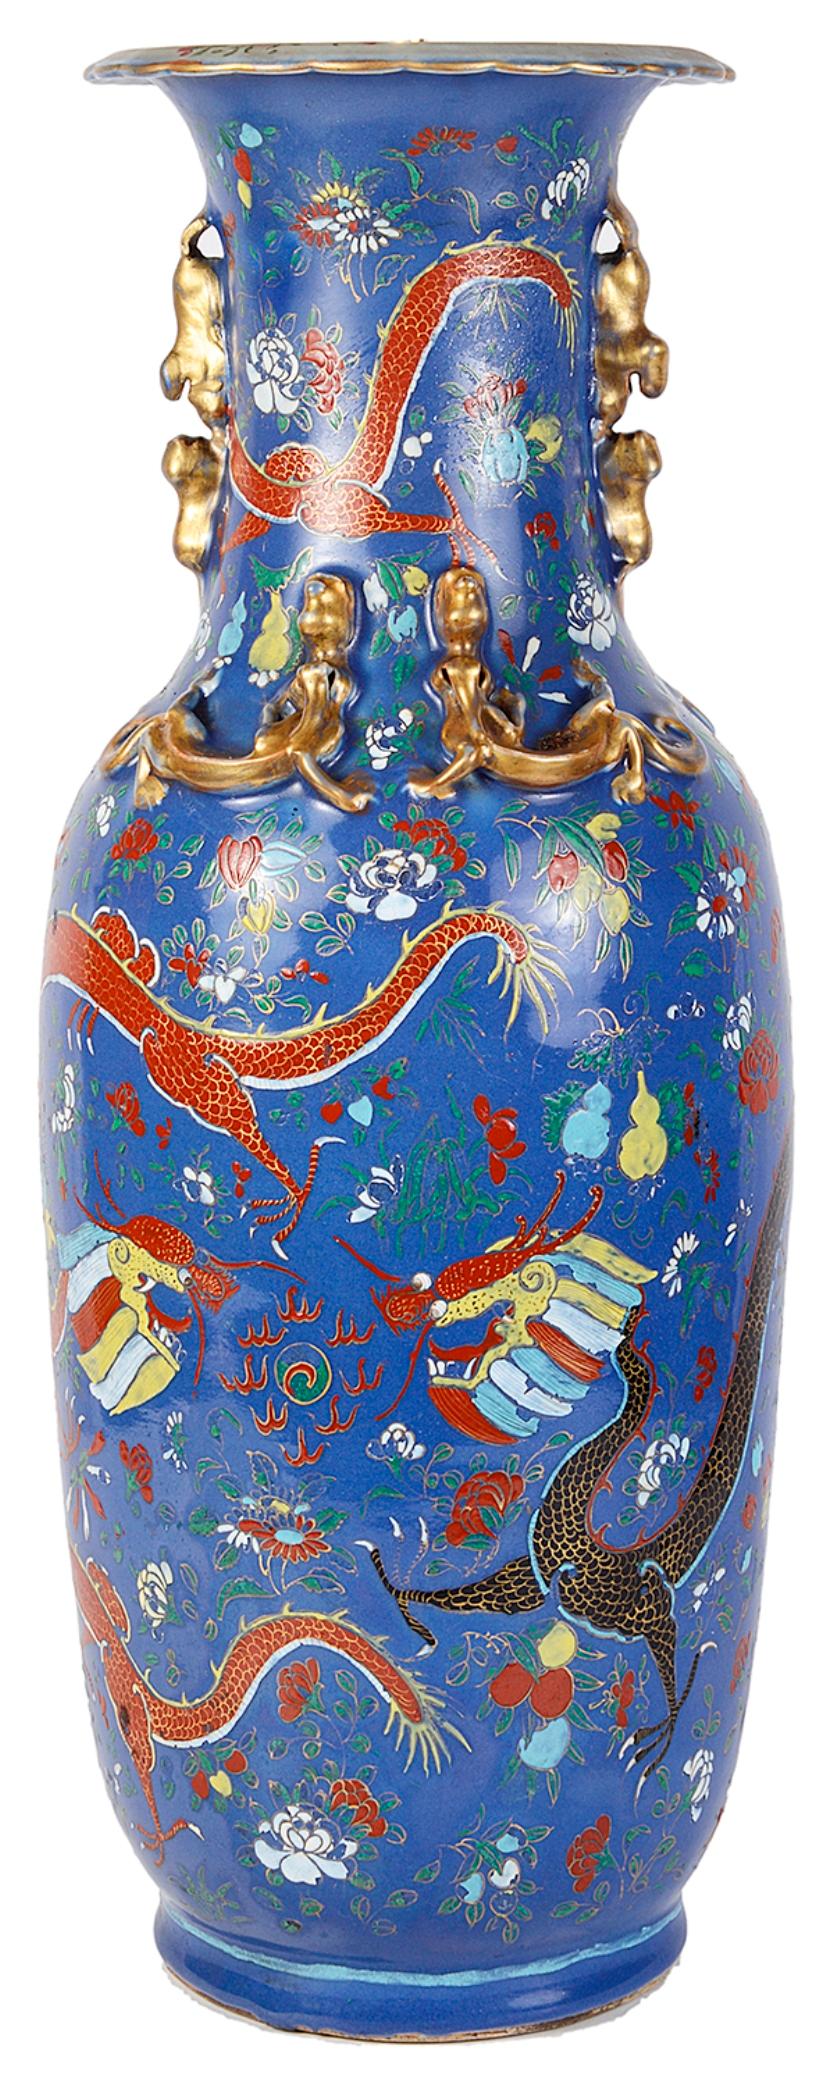 Un vase ou une lampe inhabituelle en porcelaine à fond bleu du 19ème siècle. Avec de merveilleux dragons mythiques parmi des fleurs et des motifs classiques.